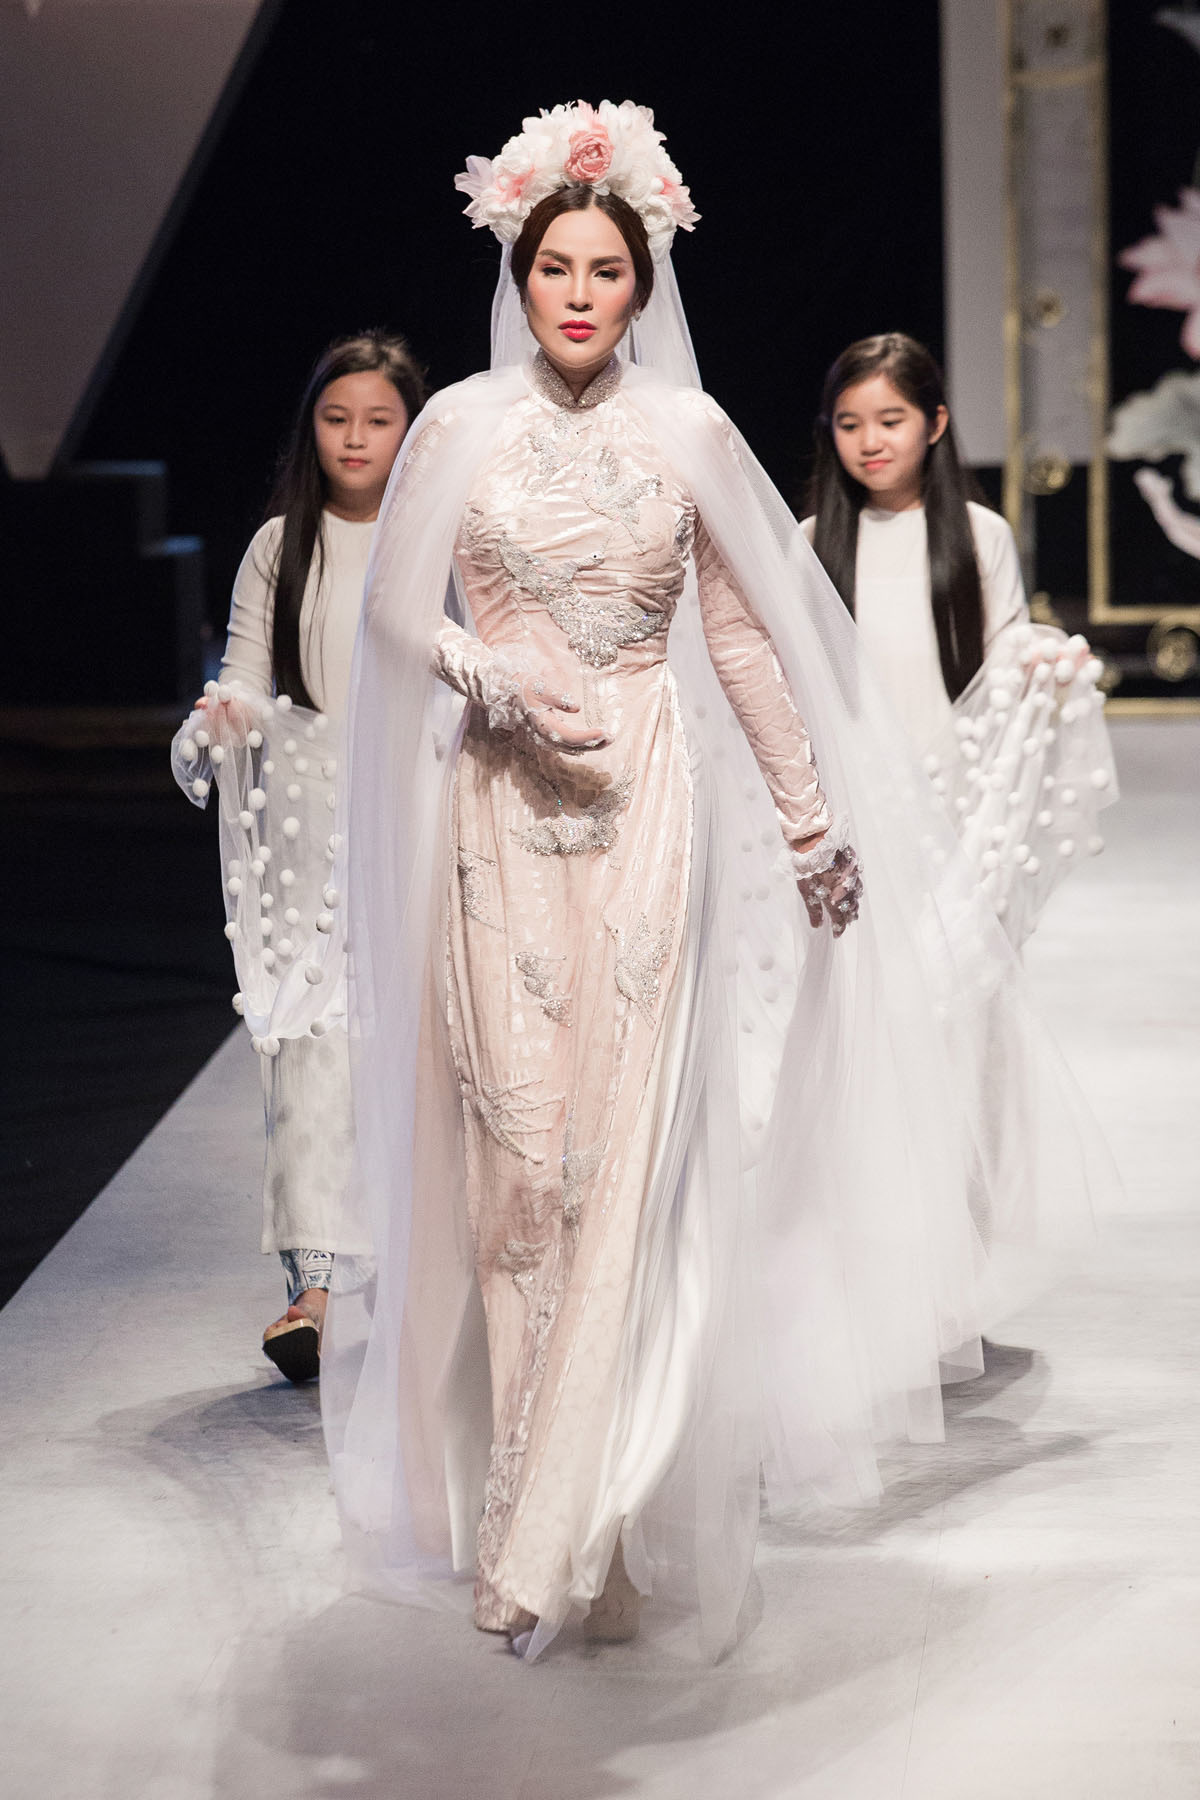 Hoa hậu Phương Lê kiêu sa áo dài sải bước với vai trò vedette